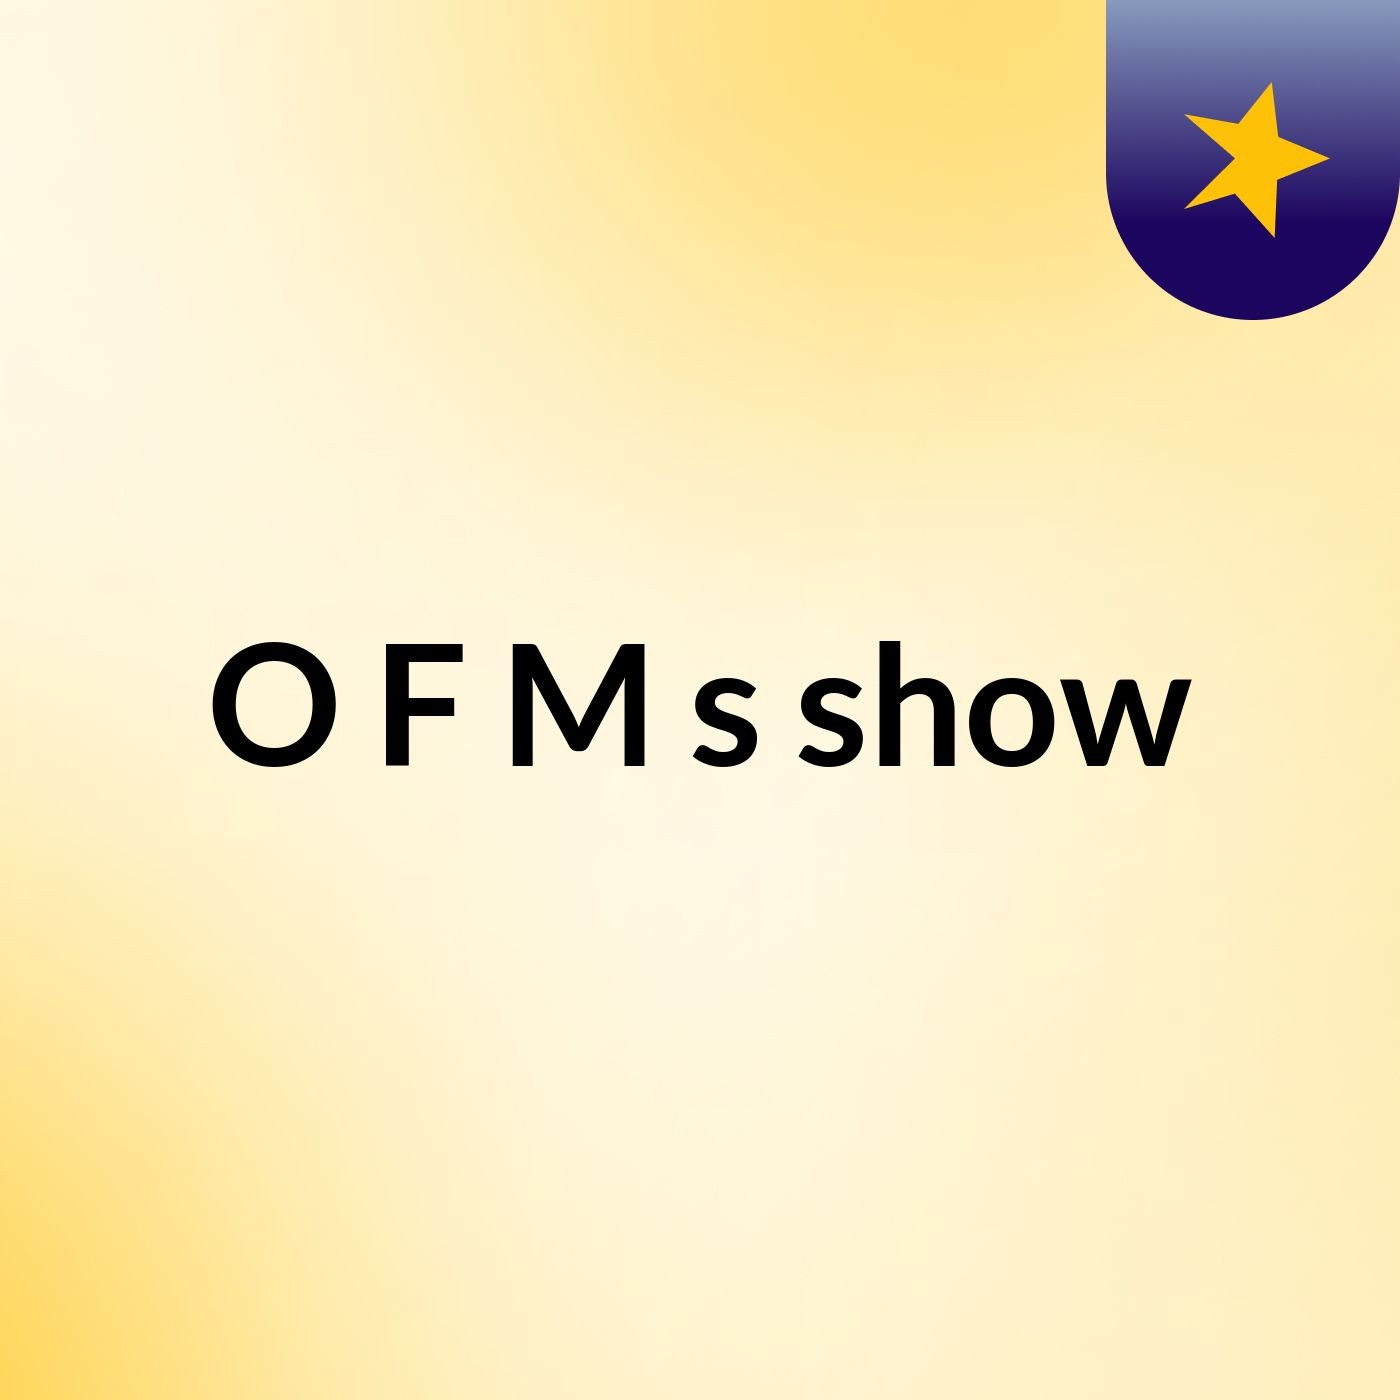 O F M's show